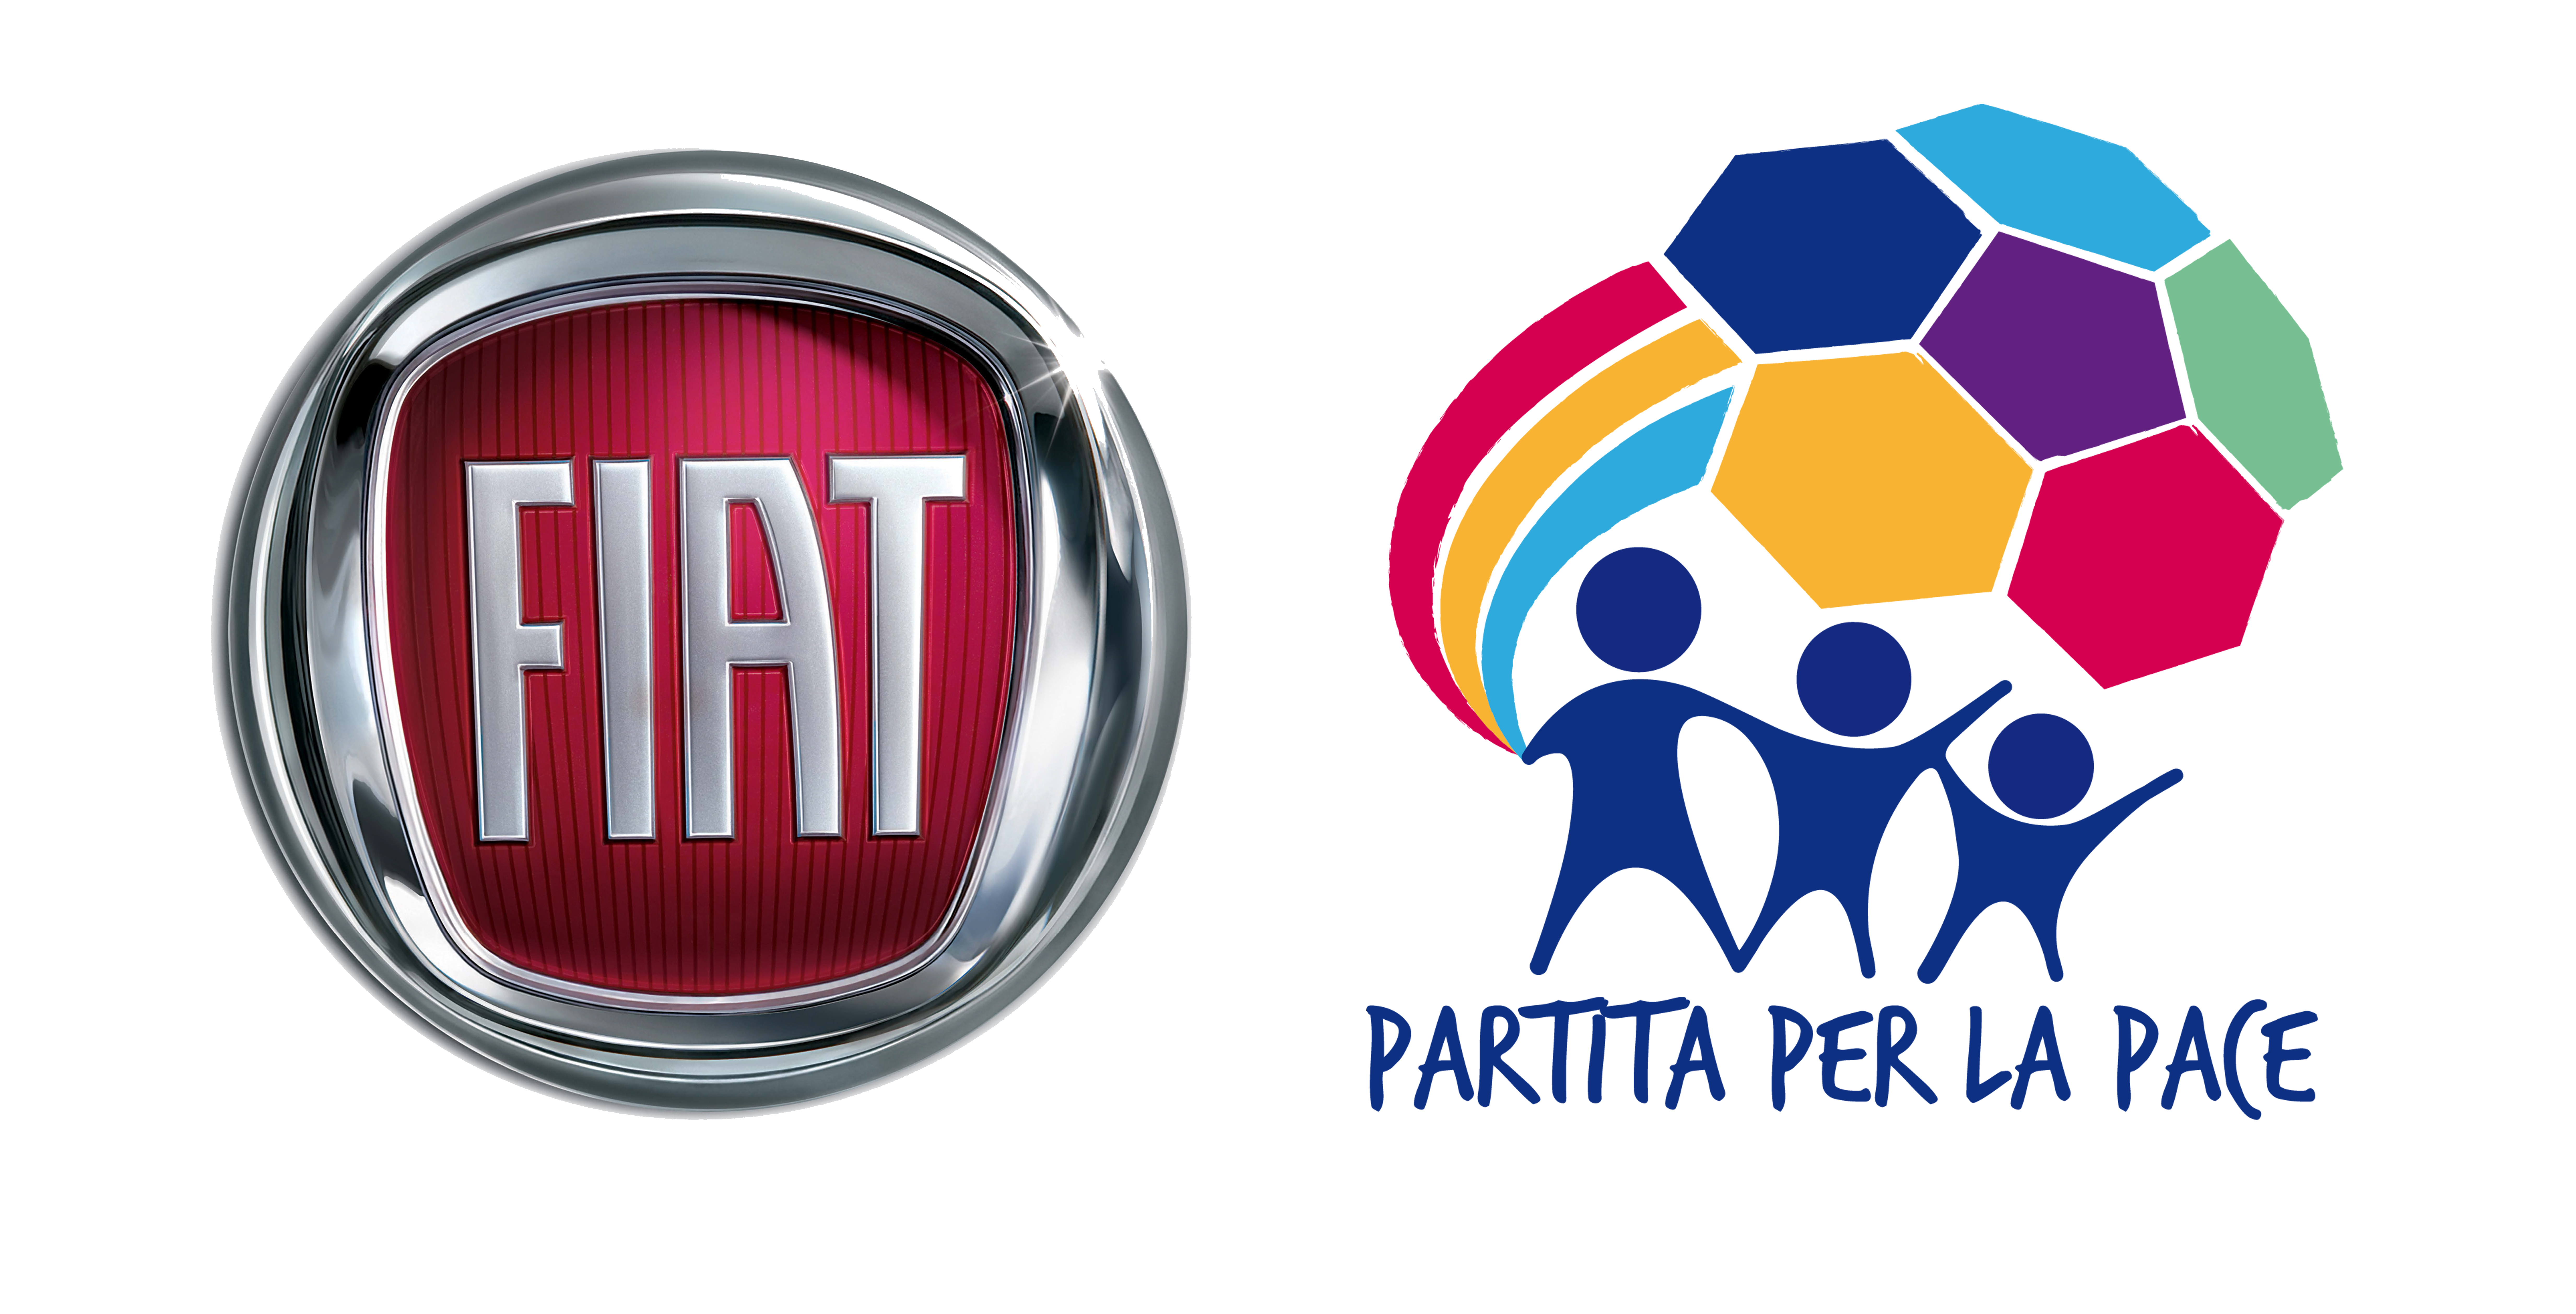  Fiat Top Partner della “Partita Interreligiosa per la Pace”